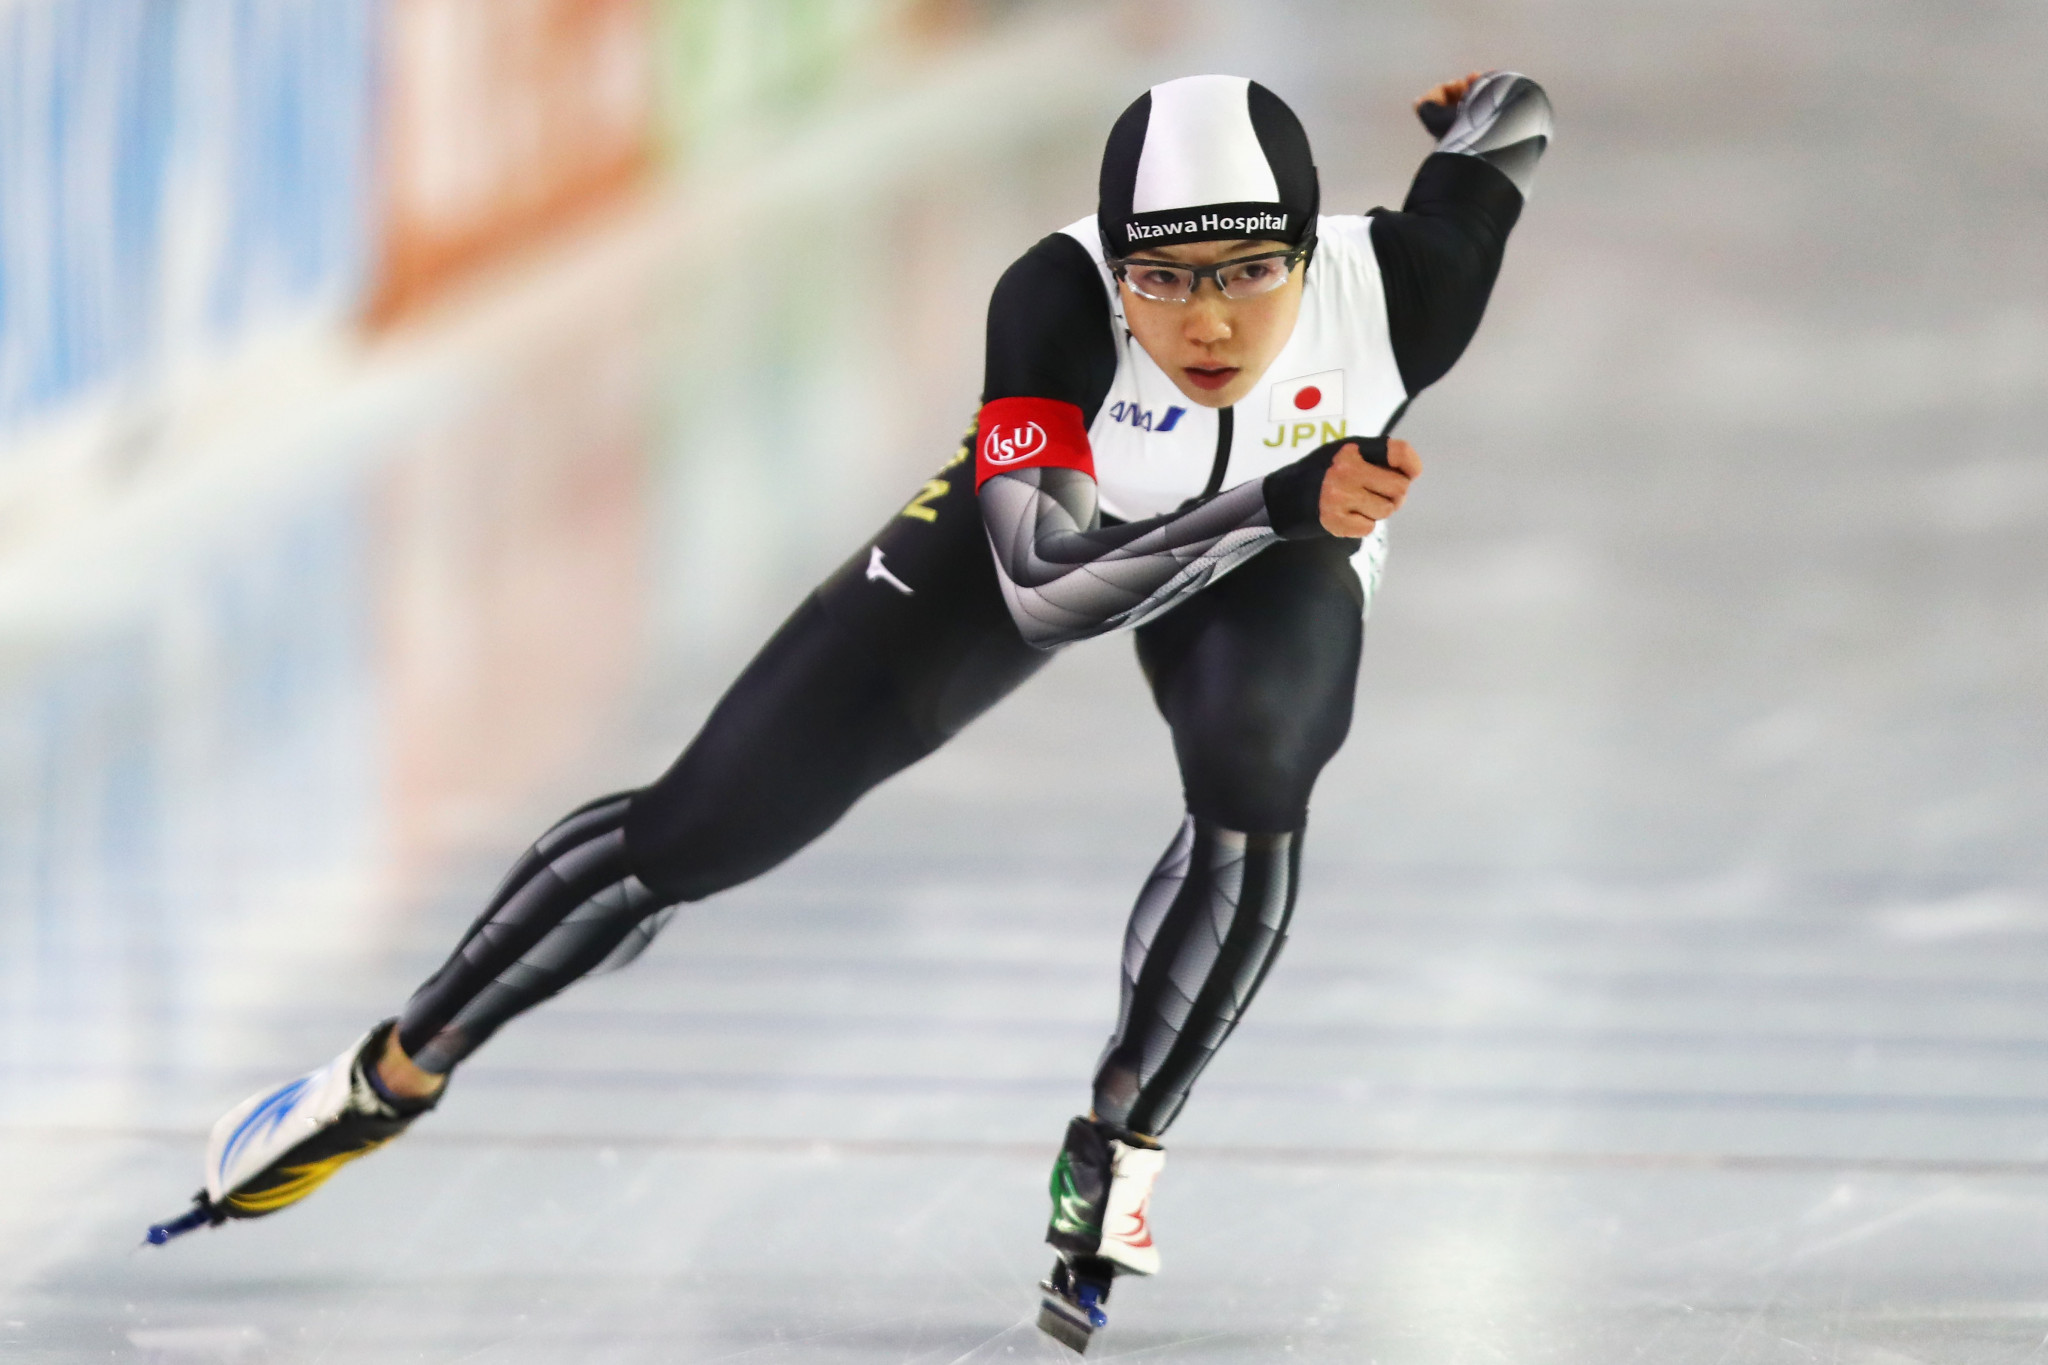 Kodaira among Japanese hopes at home ISU Speed Skating World Cup